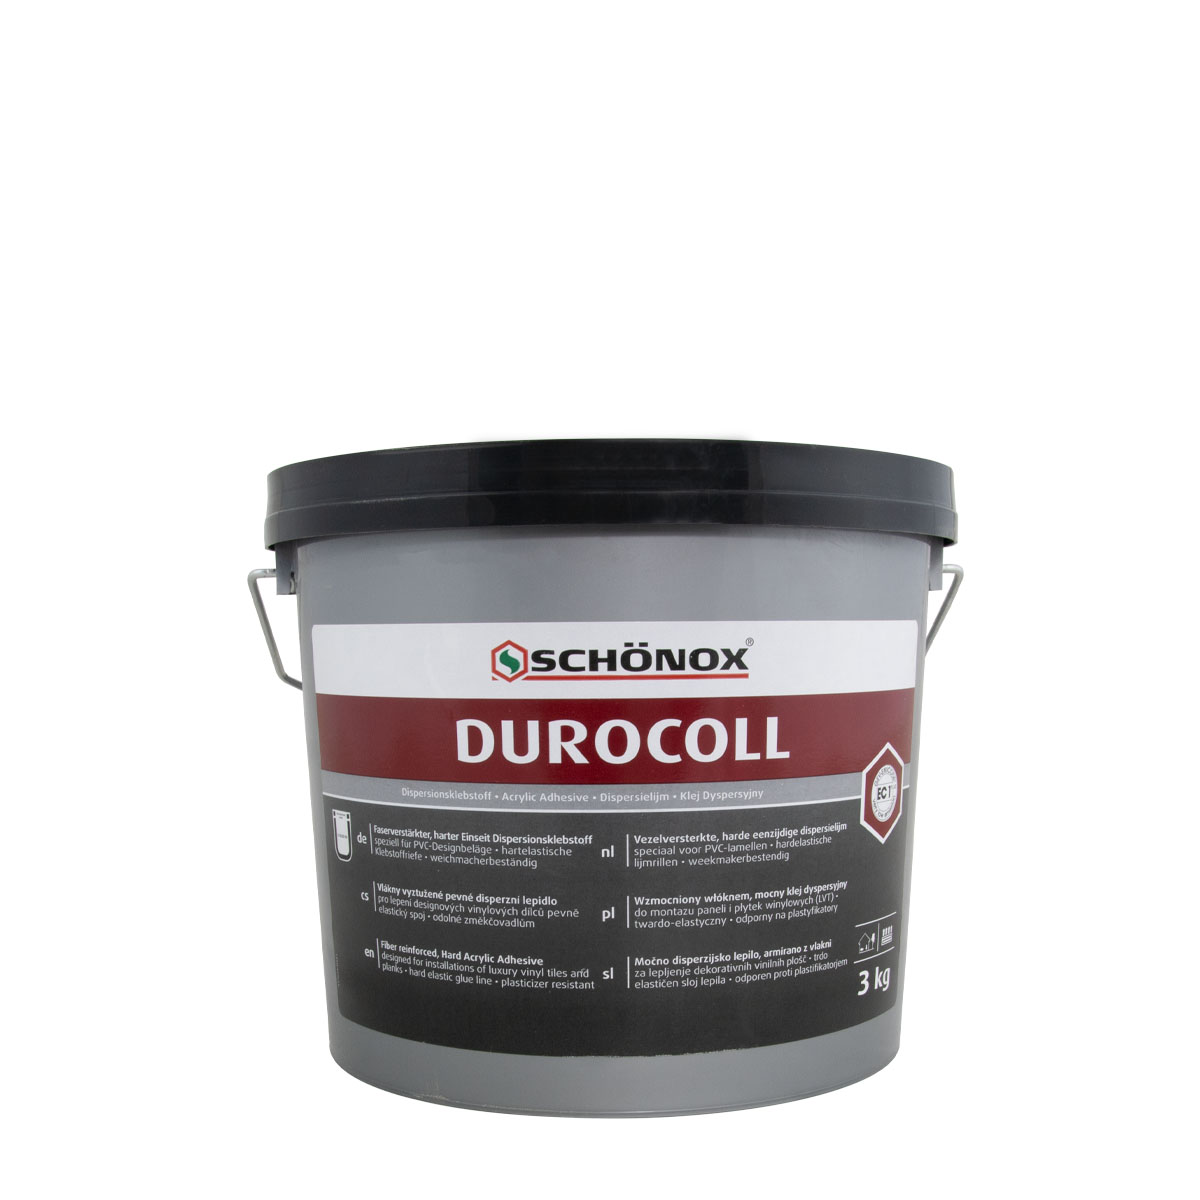 Schönox Durocoll 3kg, Dispersionsklebstoff